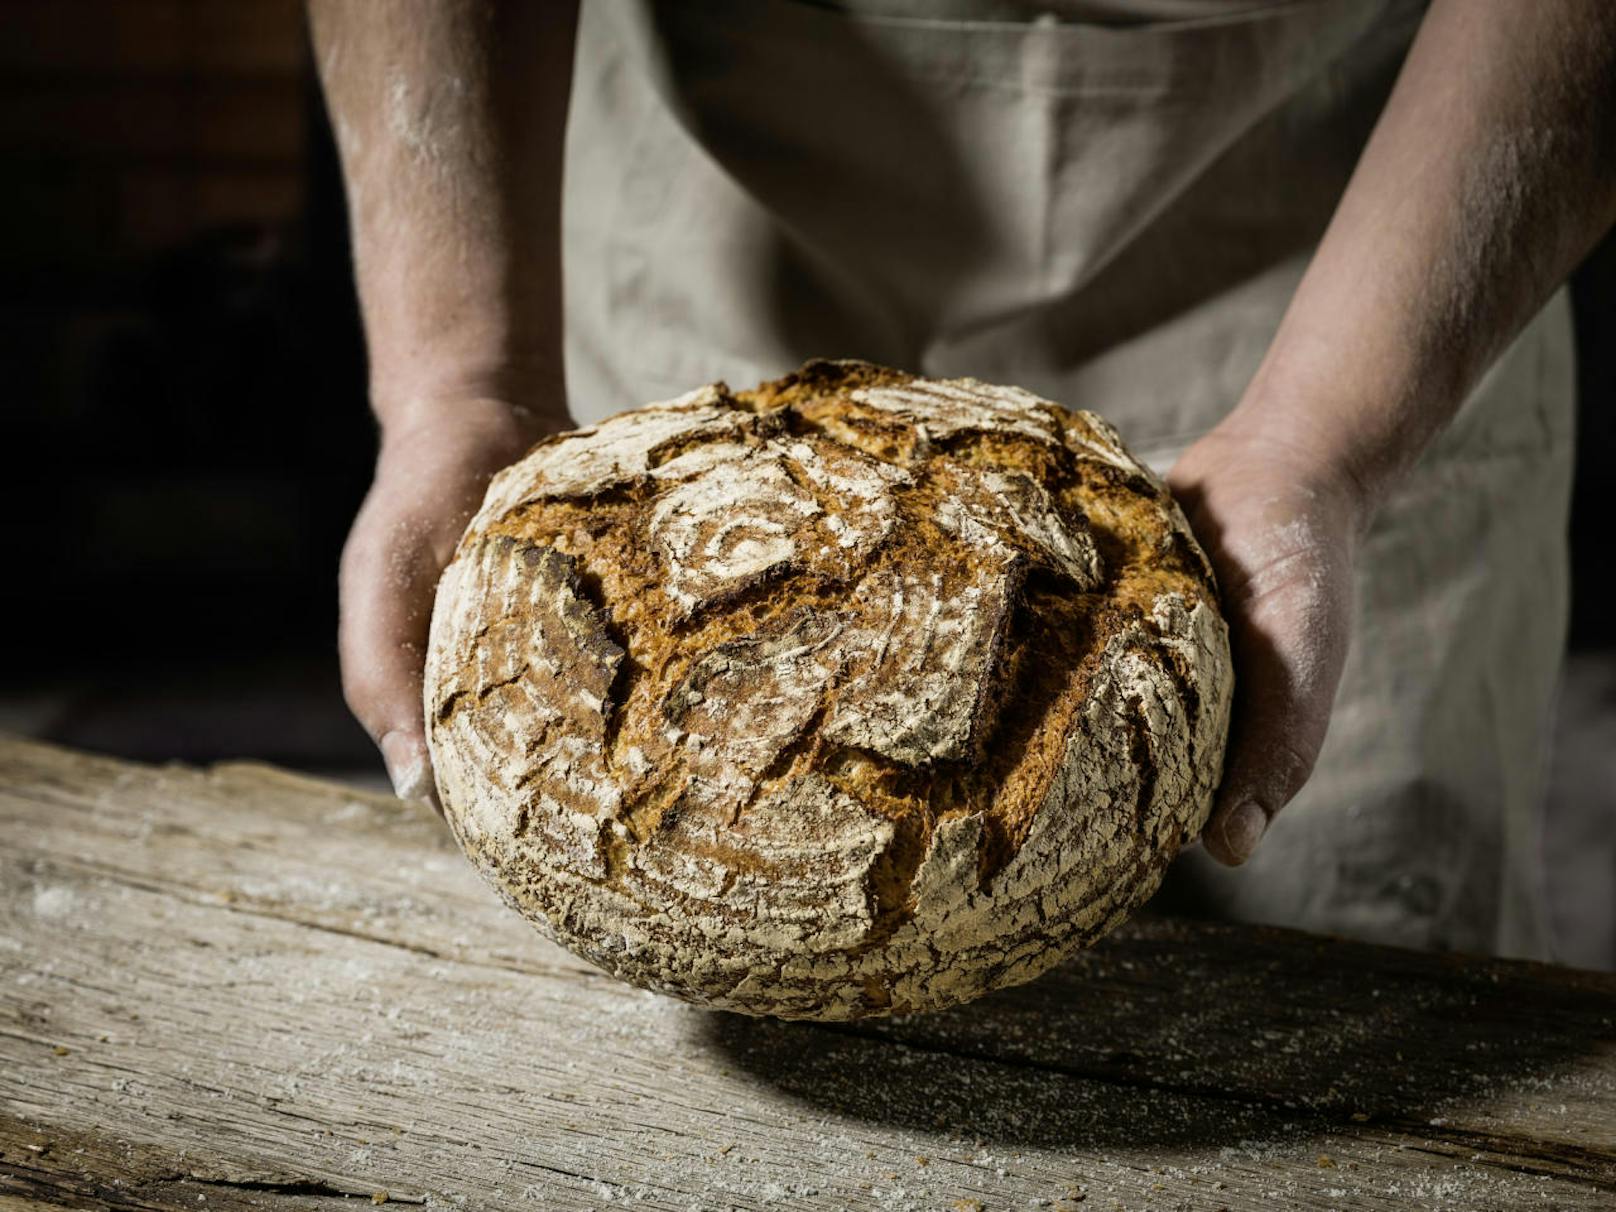 Wasser, Mehl und Salz. So einfach ist das - und trotzdem ist selbstgemachtes Brot so viel mehr als das.